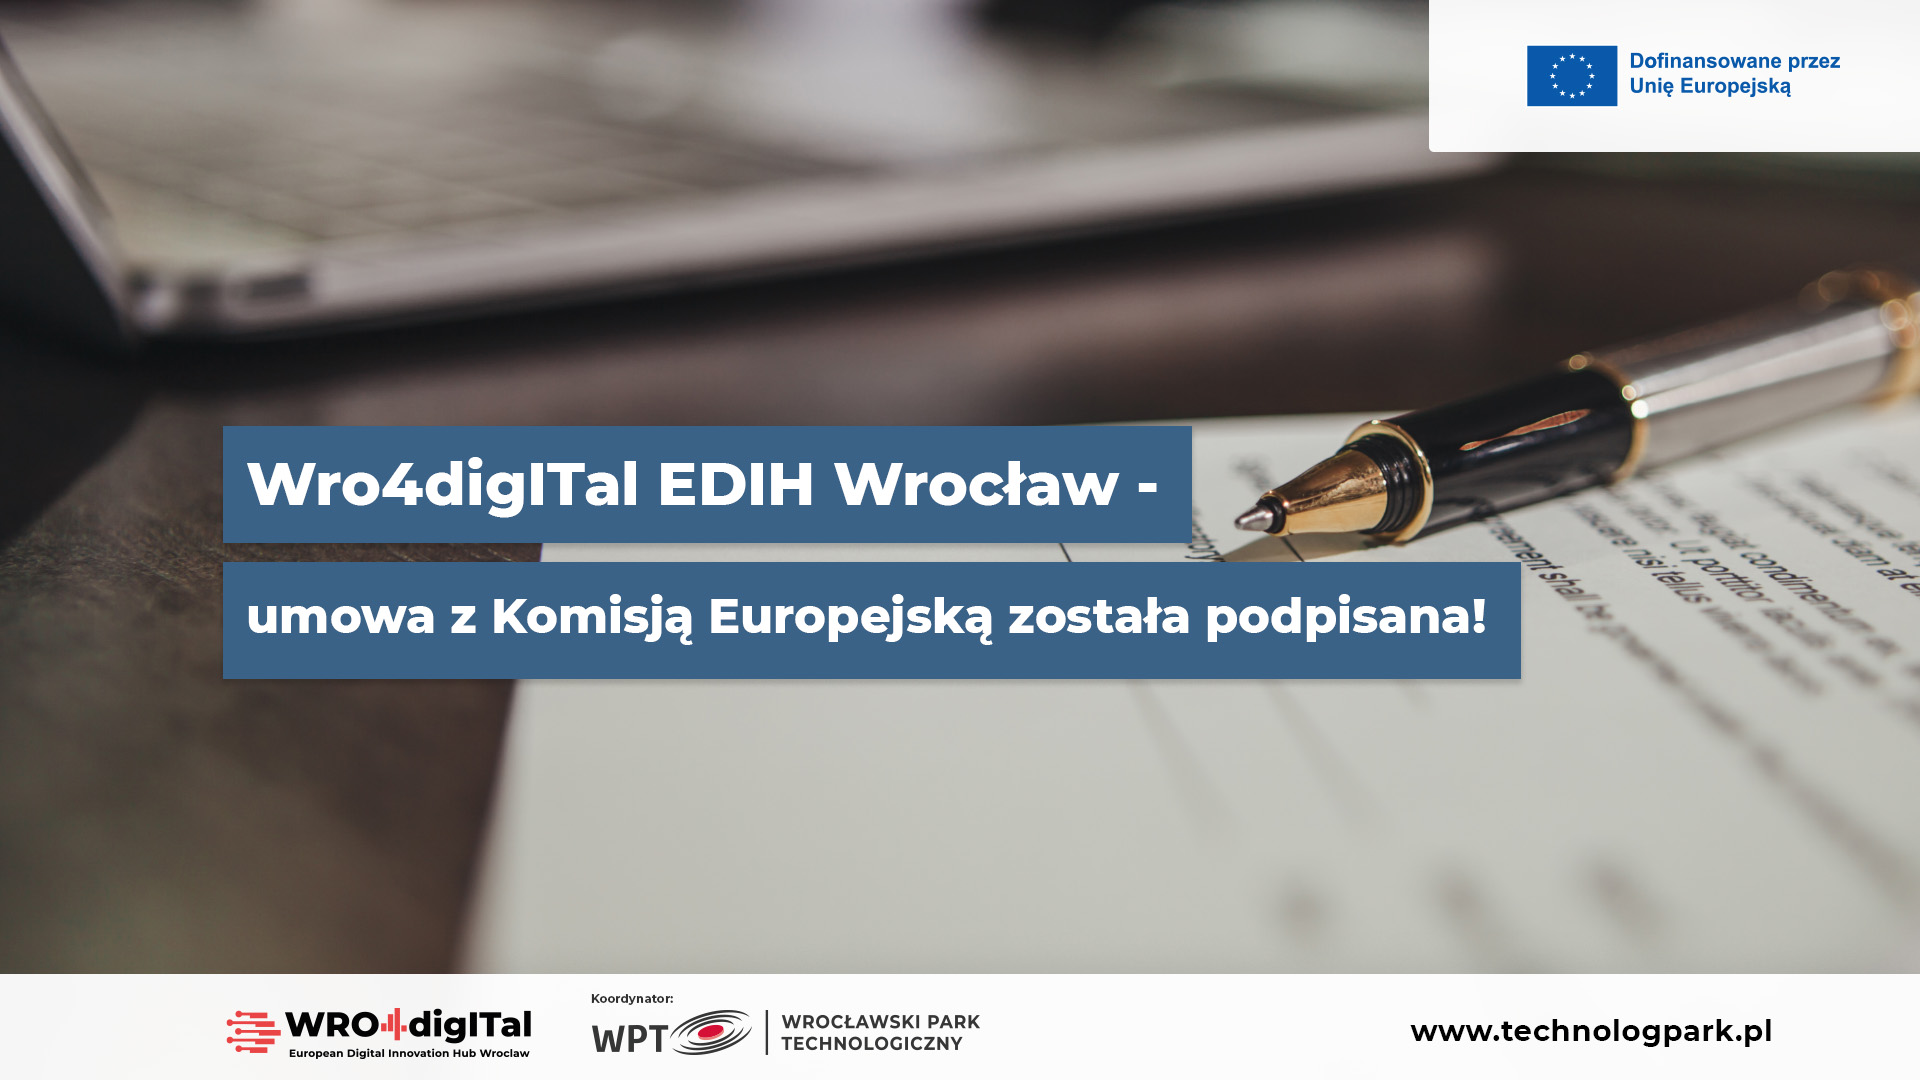 WRO4digITal EDIH Wrocław – umowa z Komisją Europejską została podpisana!